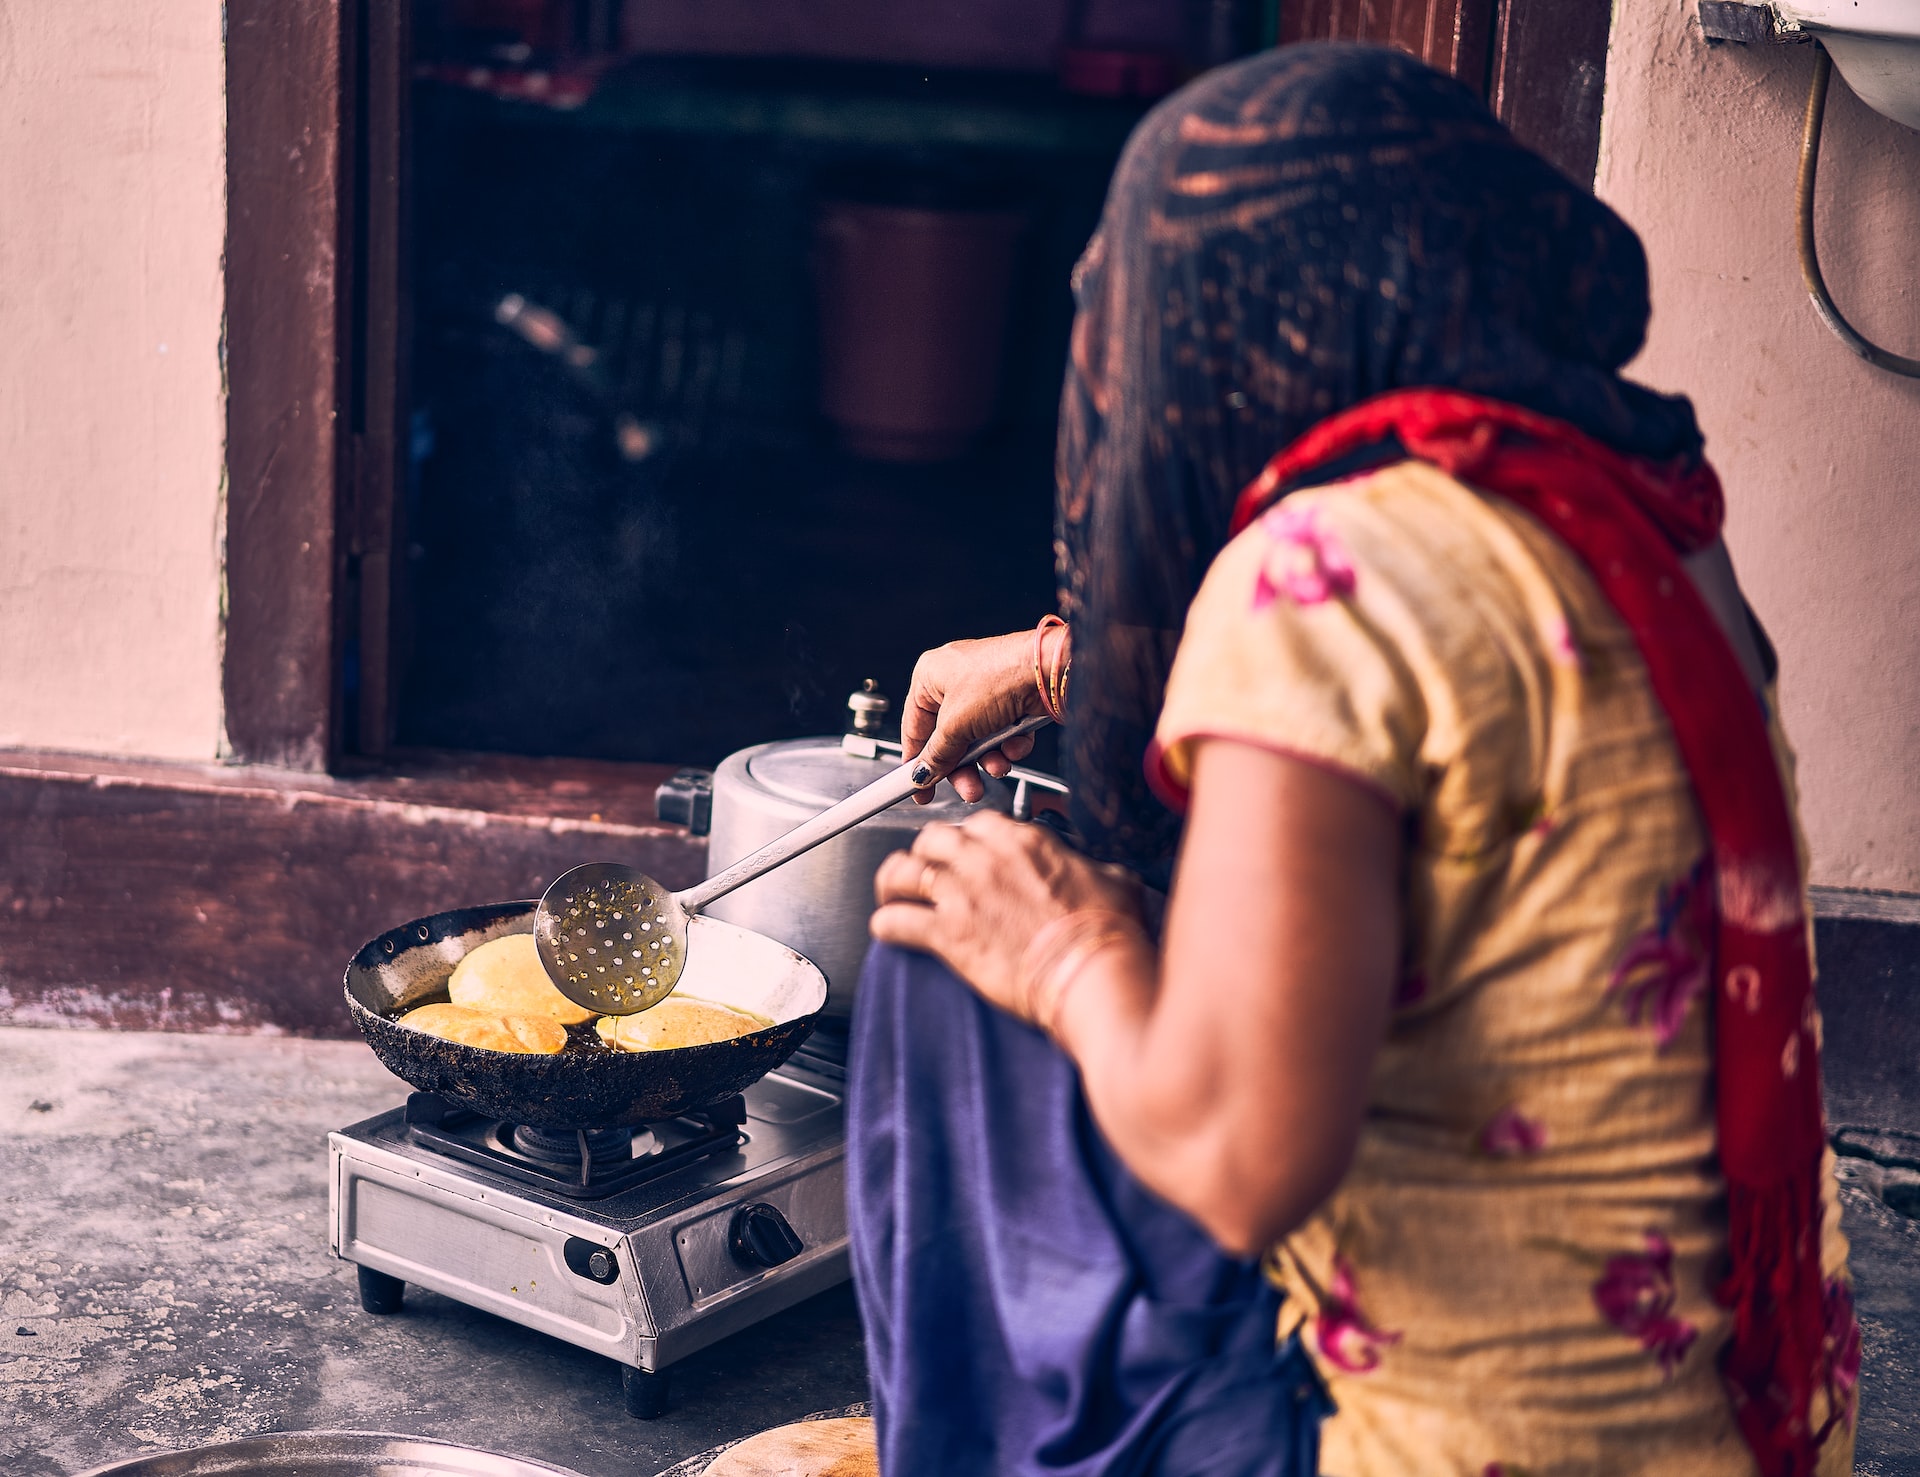 Woman cooking a puri. Photo: Ashwini Chaudhary / Unsplash